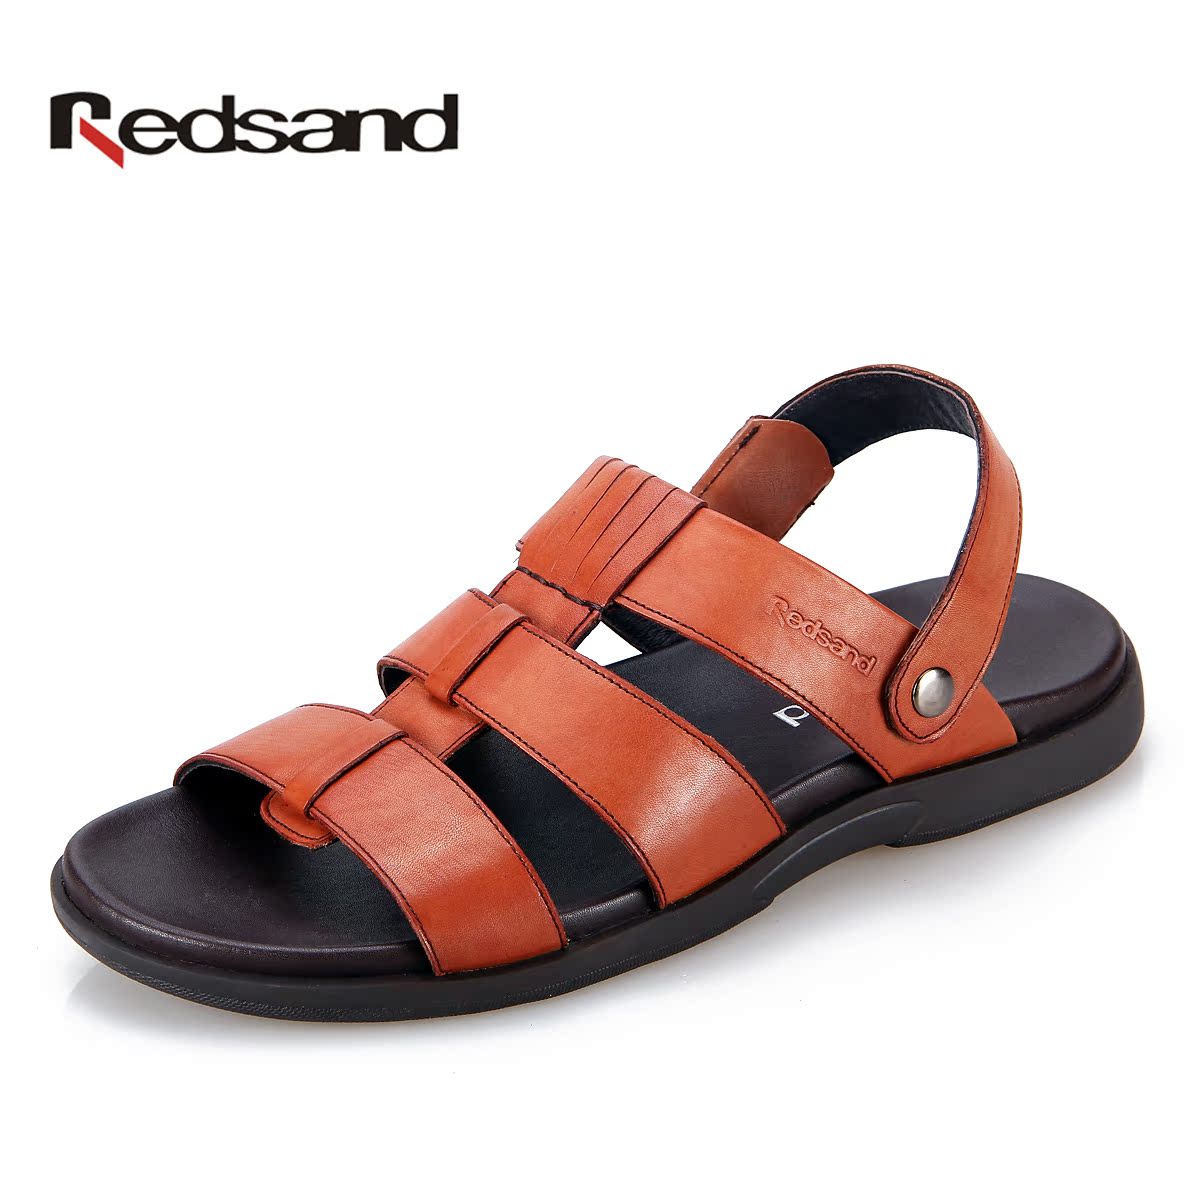 Redsand红砂男凉鞋2013新款休闲男沙滩鞋简约休闲男凉鞋真皮凉鞋